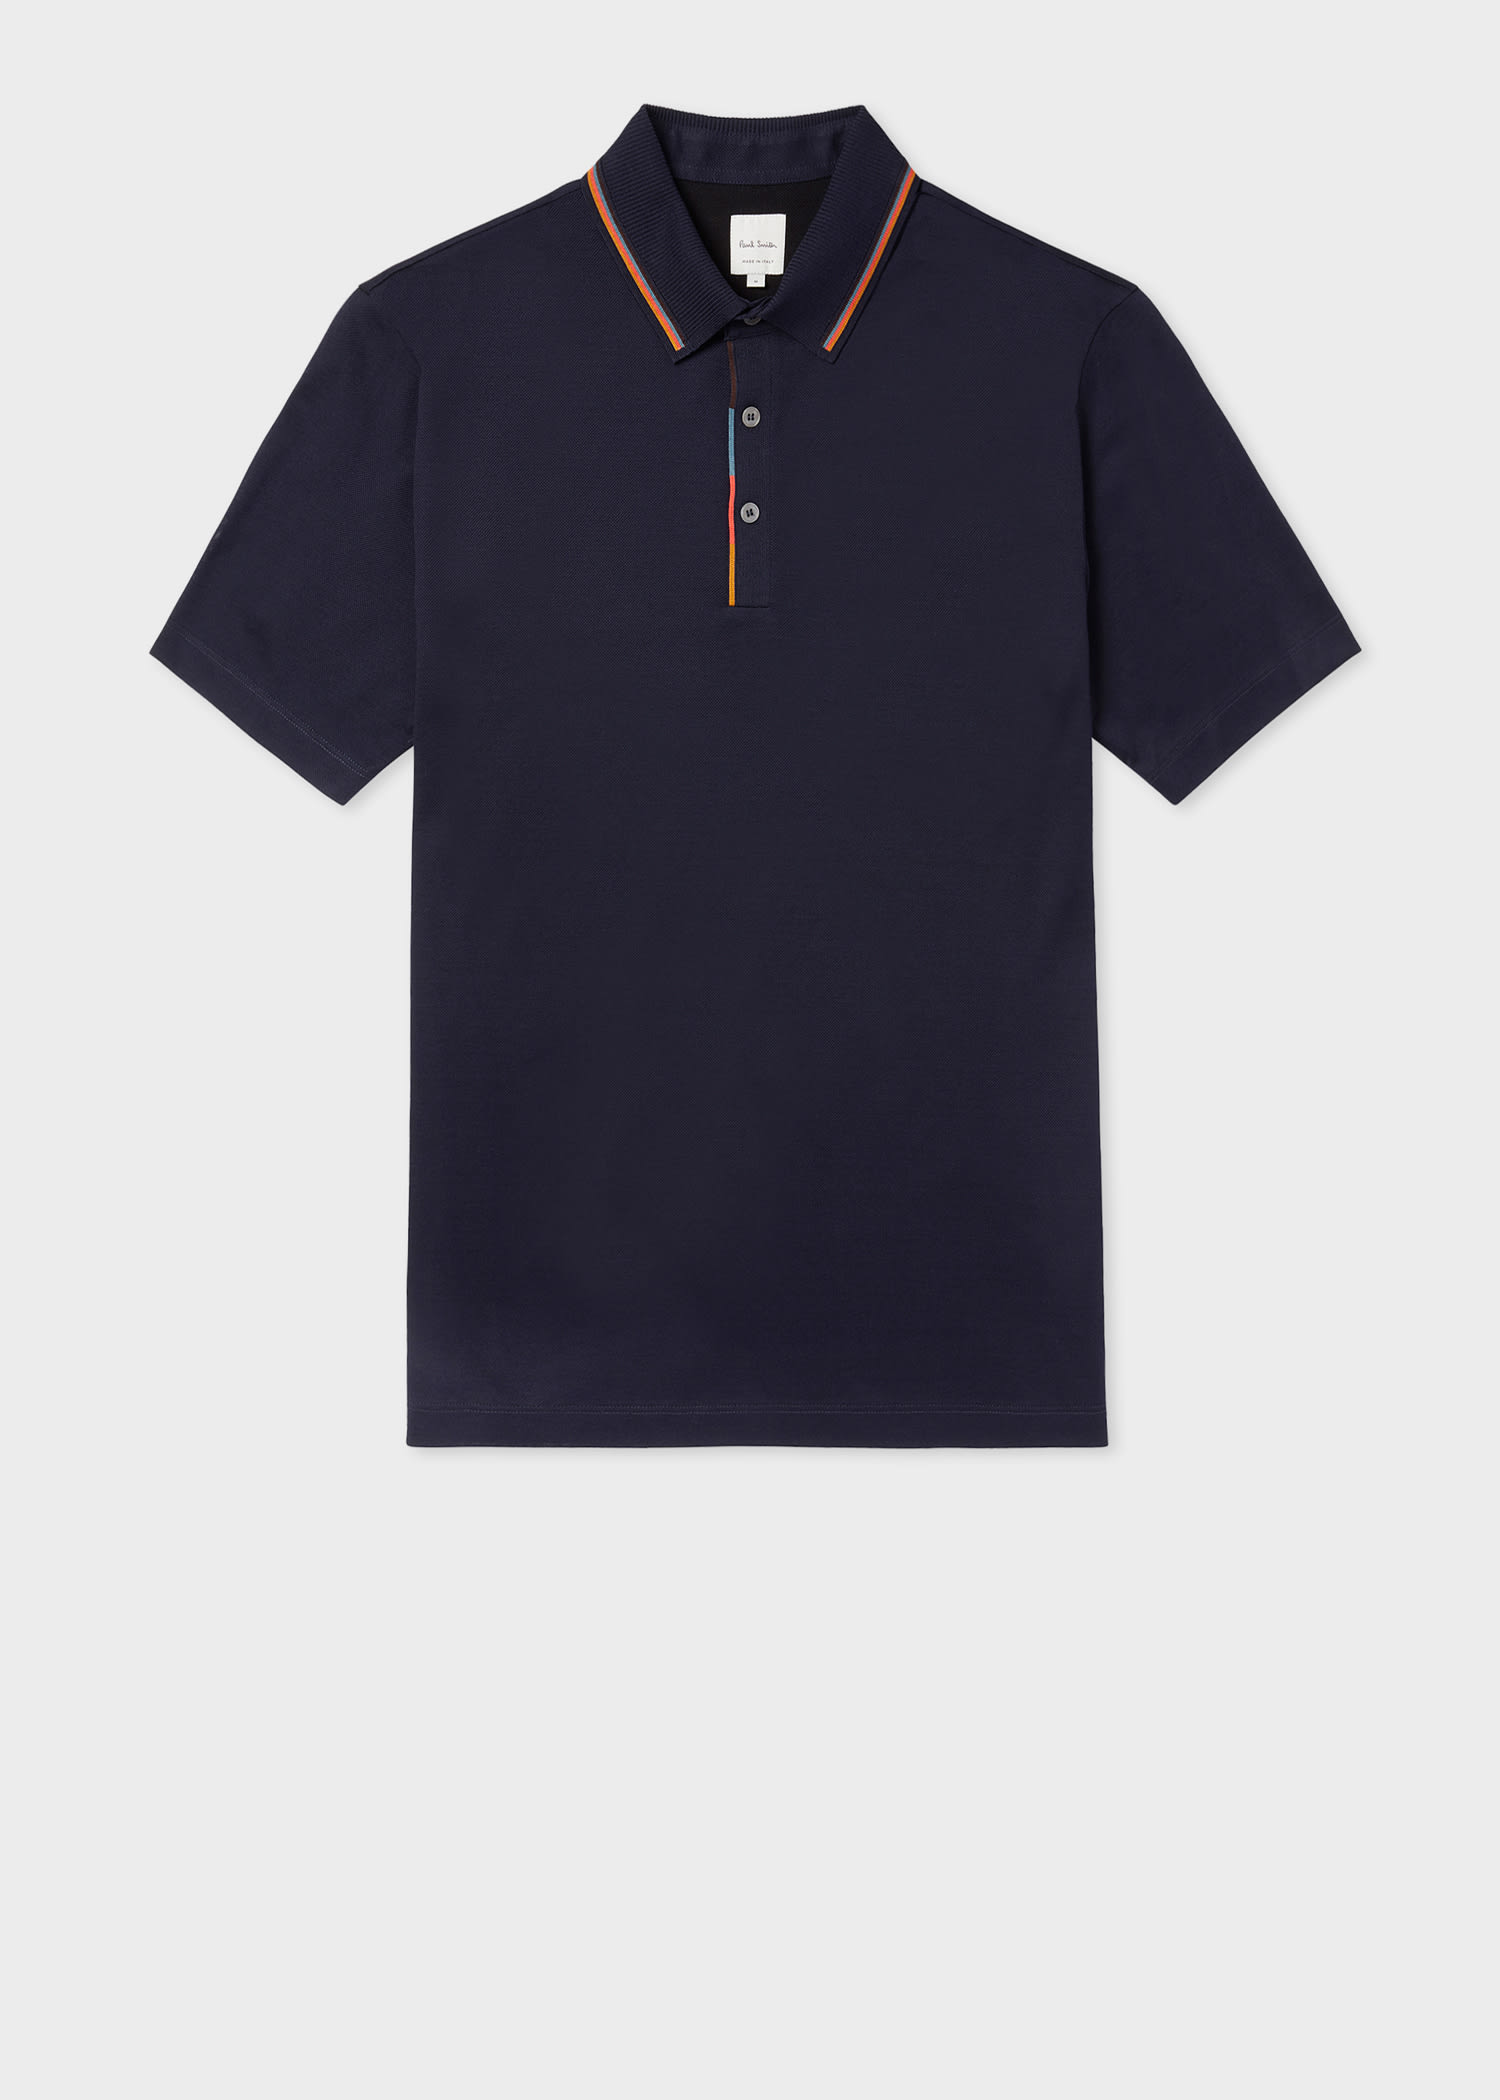 Men's Designer Polo Shirts | Short & Long Sleeve Polos - Paul Smith